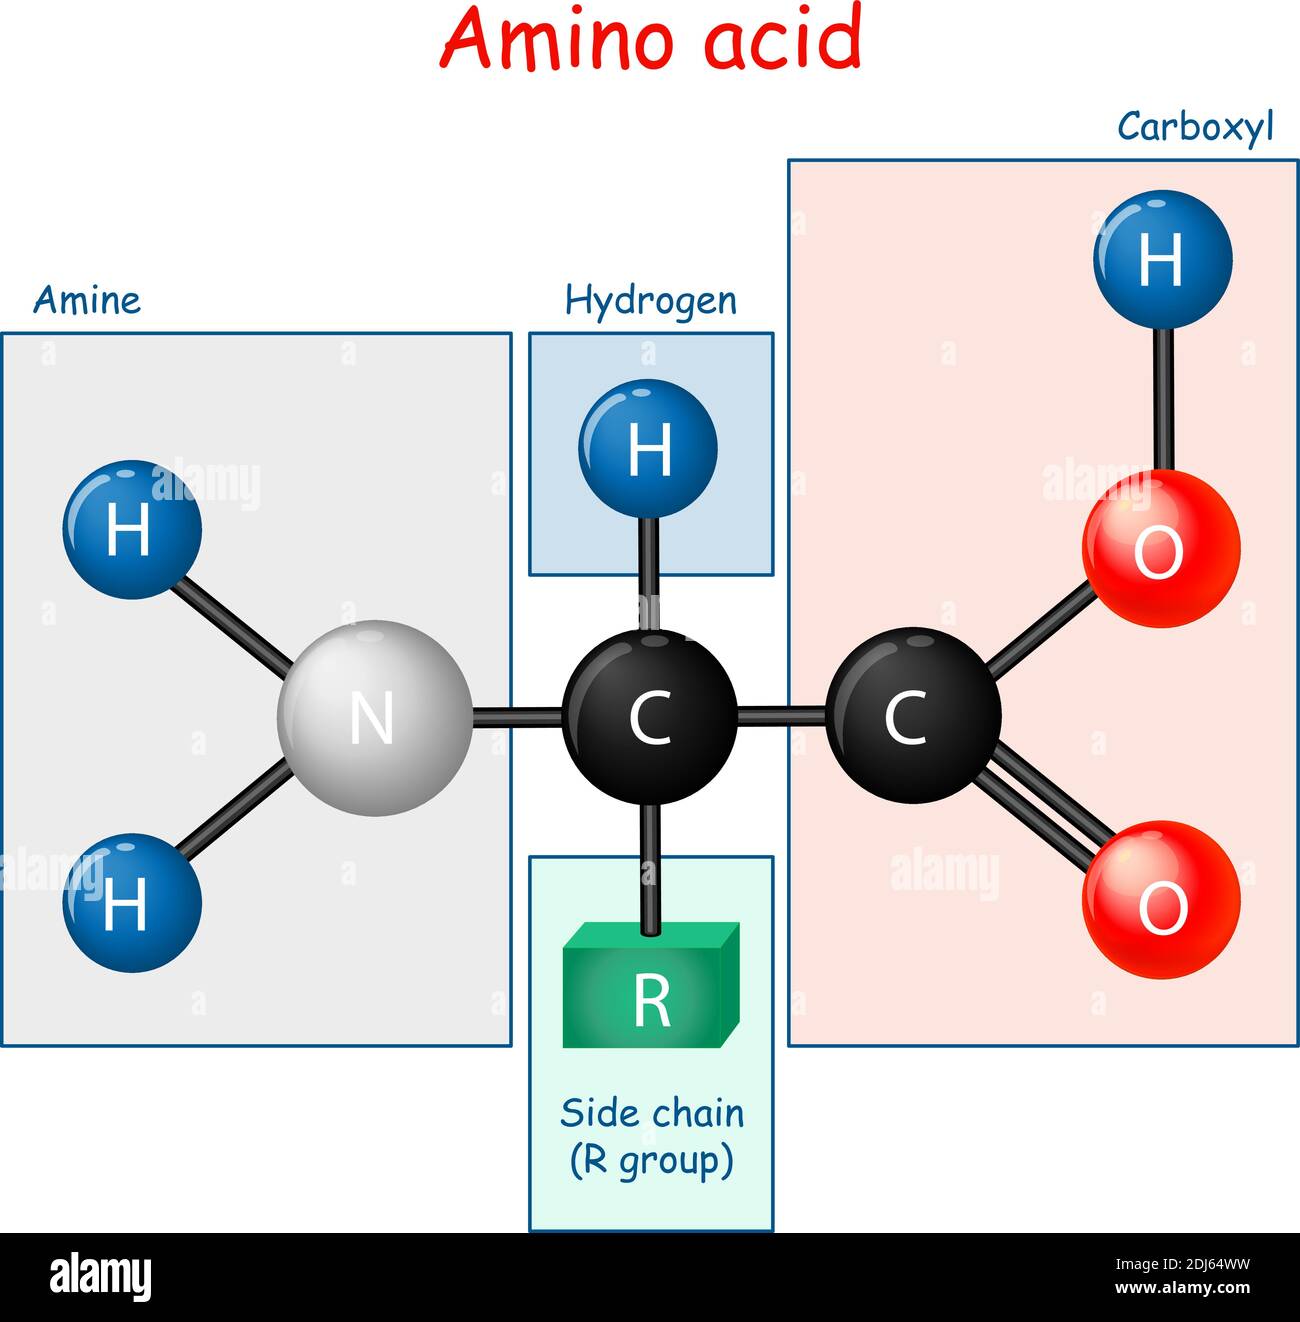 Aminosäure. Strukturformel und Modell des Moleküls. Vektordiagramm für pädagogische und wissenschaftliche Nutzung Stock Vektor